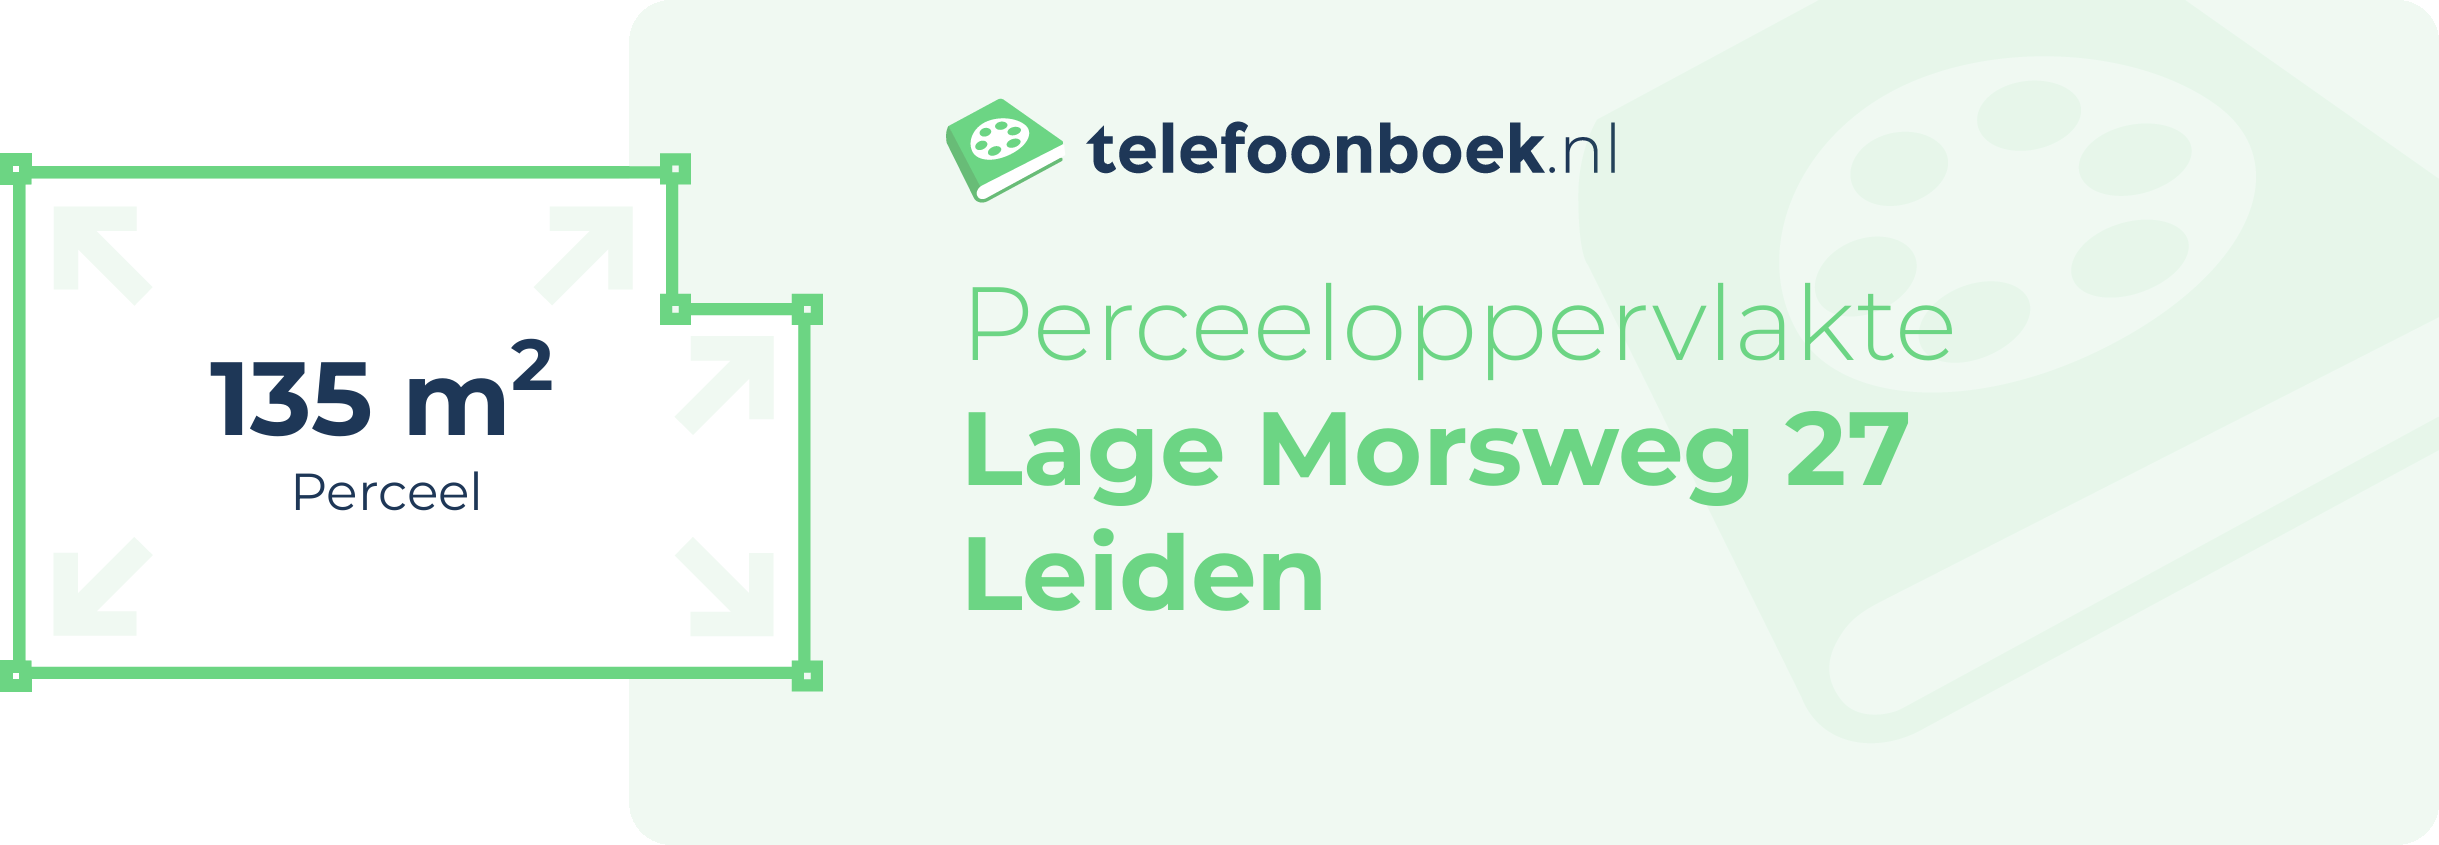 Perceeloppervlakte Lage Morsweg 27 Leiden